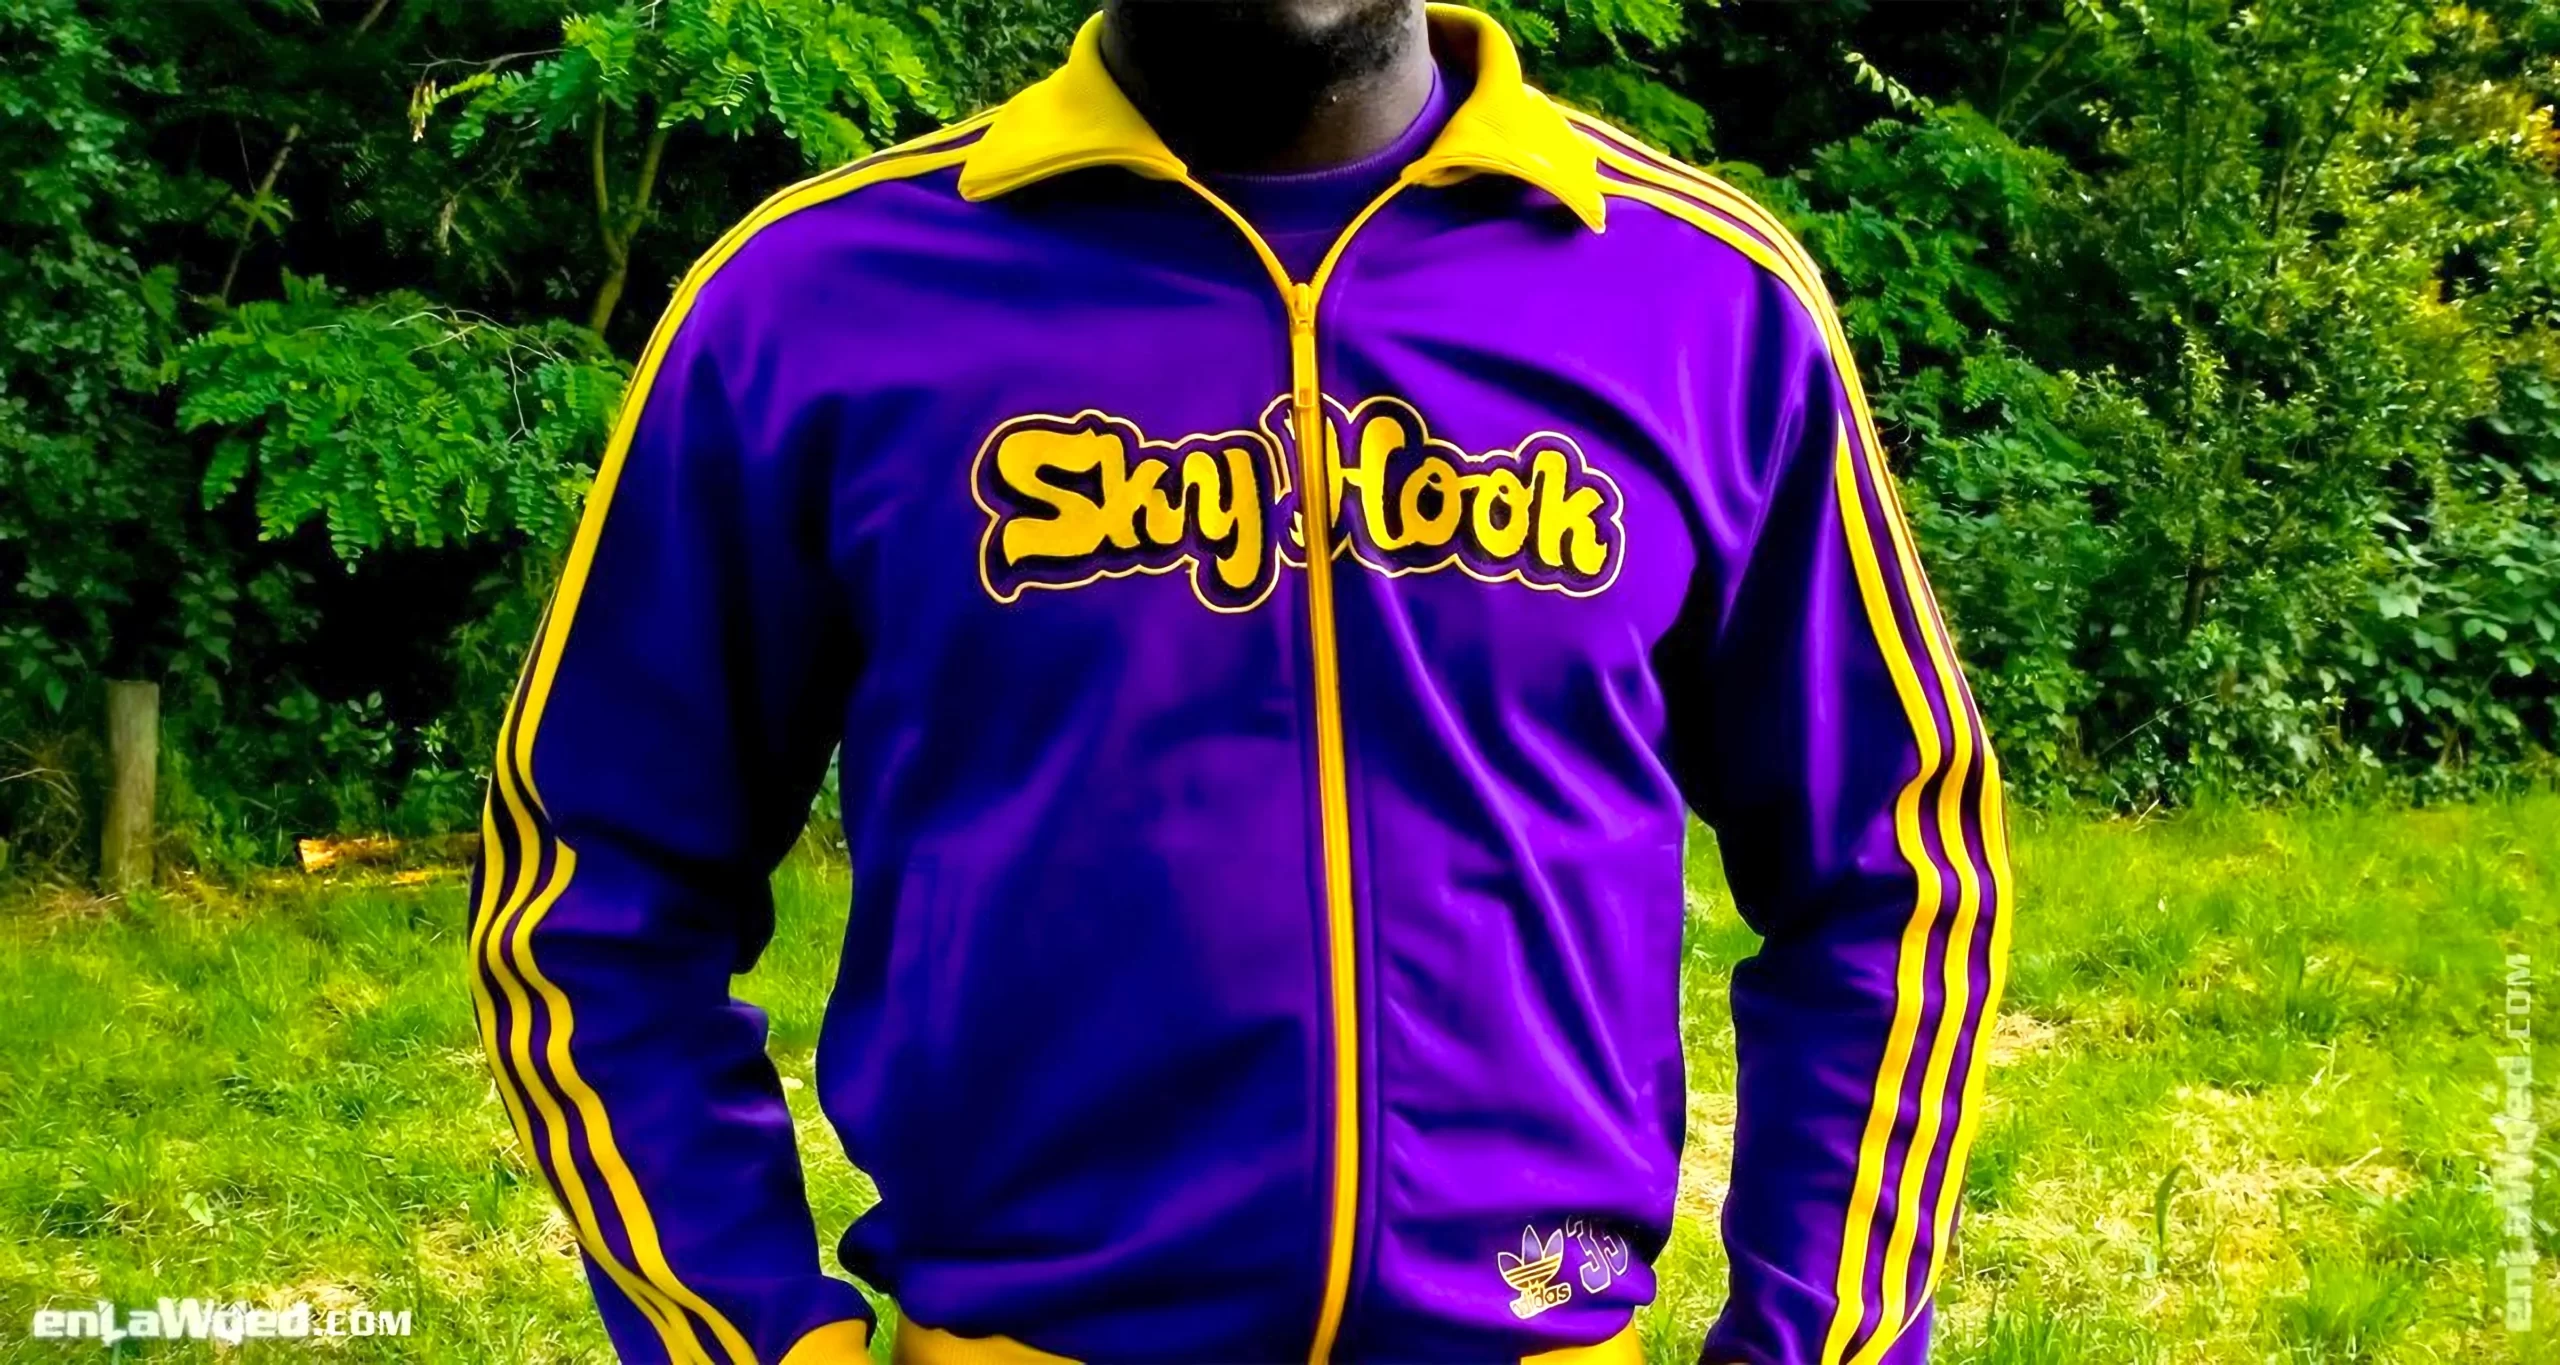 Men’s 2004 SkyHook Lakers #33 Track Top by Adidas: Rookie (EnLawded.com file #lmchk90373ip2y124413kg9st)